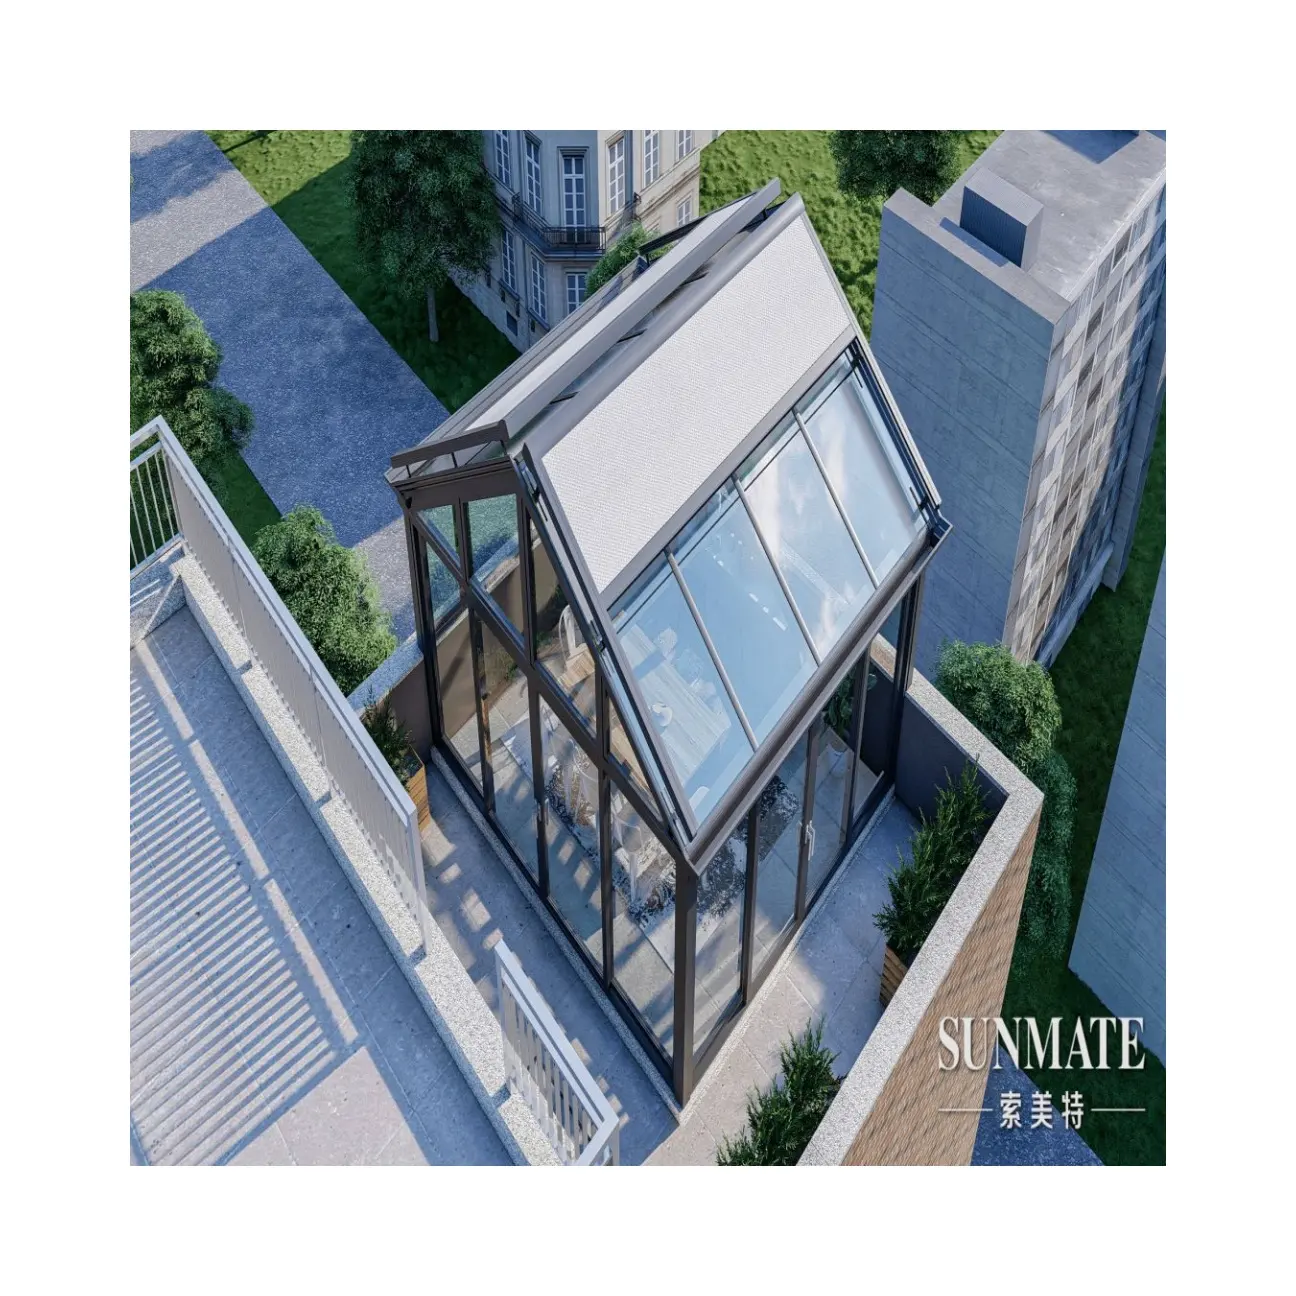 ויקטור- ממוסגר עצמאי נמוך בית וילה על הגג חדרי שמש מזכוכית עם דלתות הרמה והחלקה